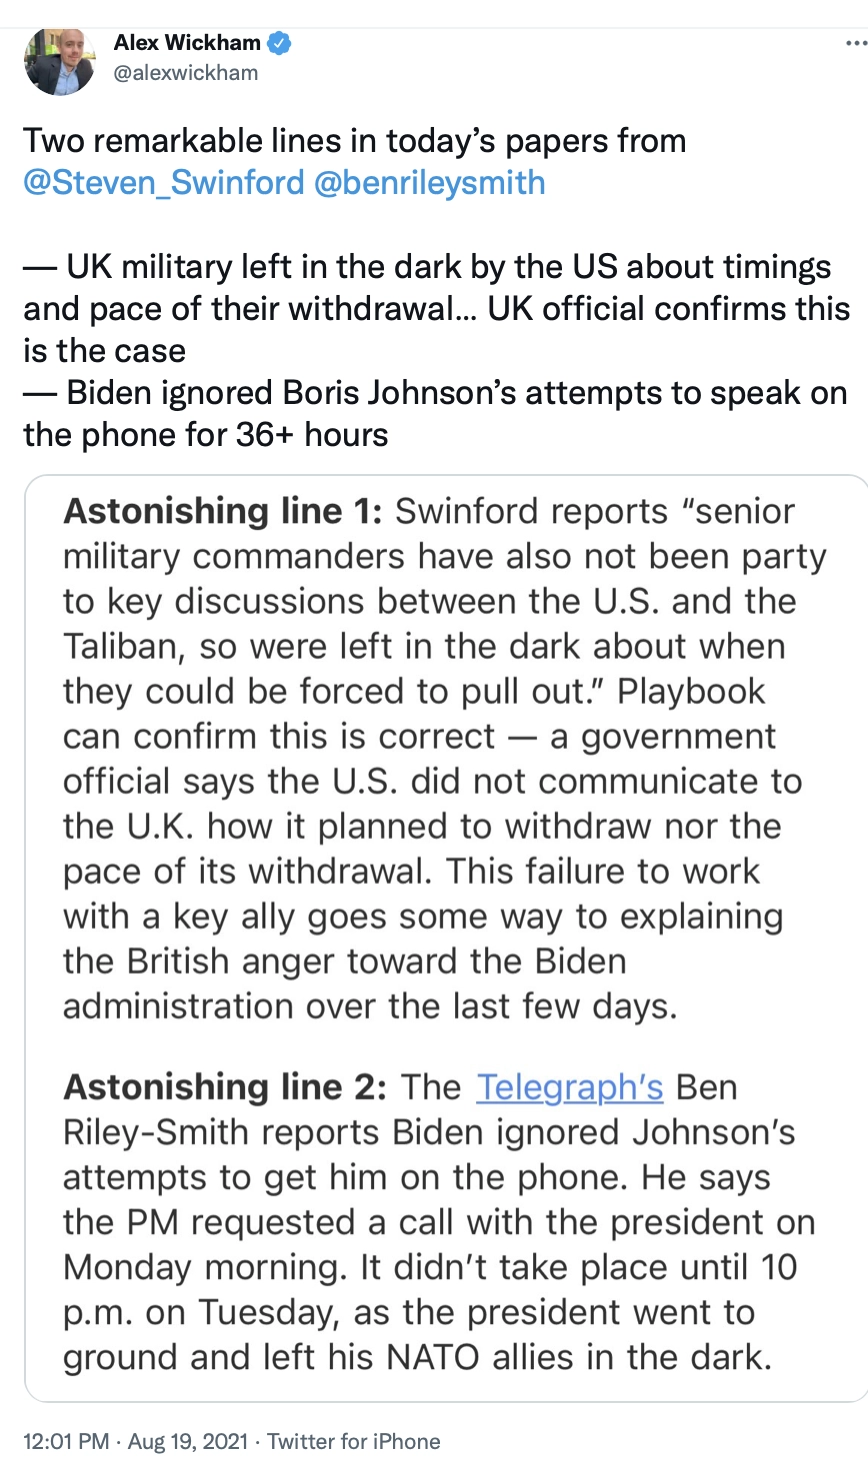 Твитт редактора лондонского POLITICO: Британские военные оставили в неведении США о сроках и темпах их вывода… Официальный представитель Великобритании подтверждает, что это так. -Байден игнорировал попытки Бориса Джонсона говорить по телефону более 36 часов. 